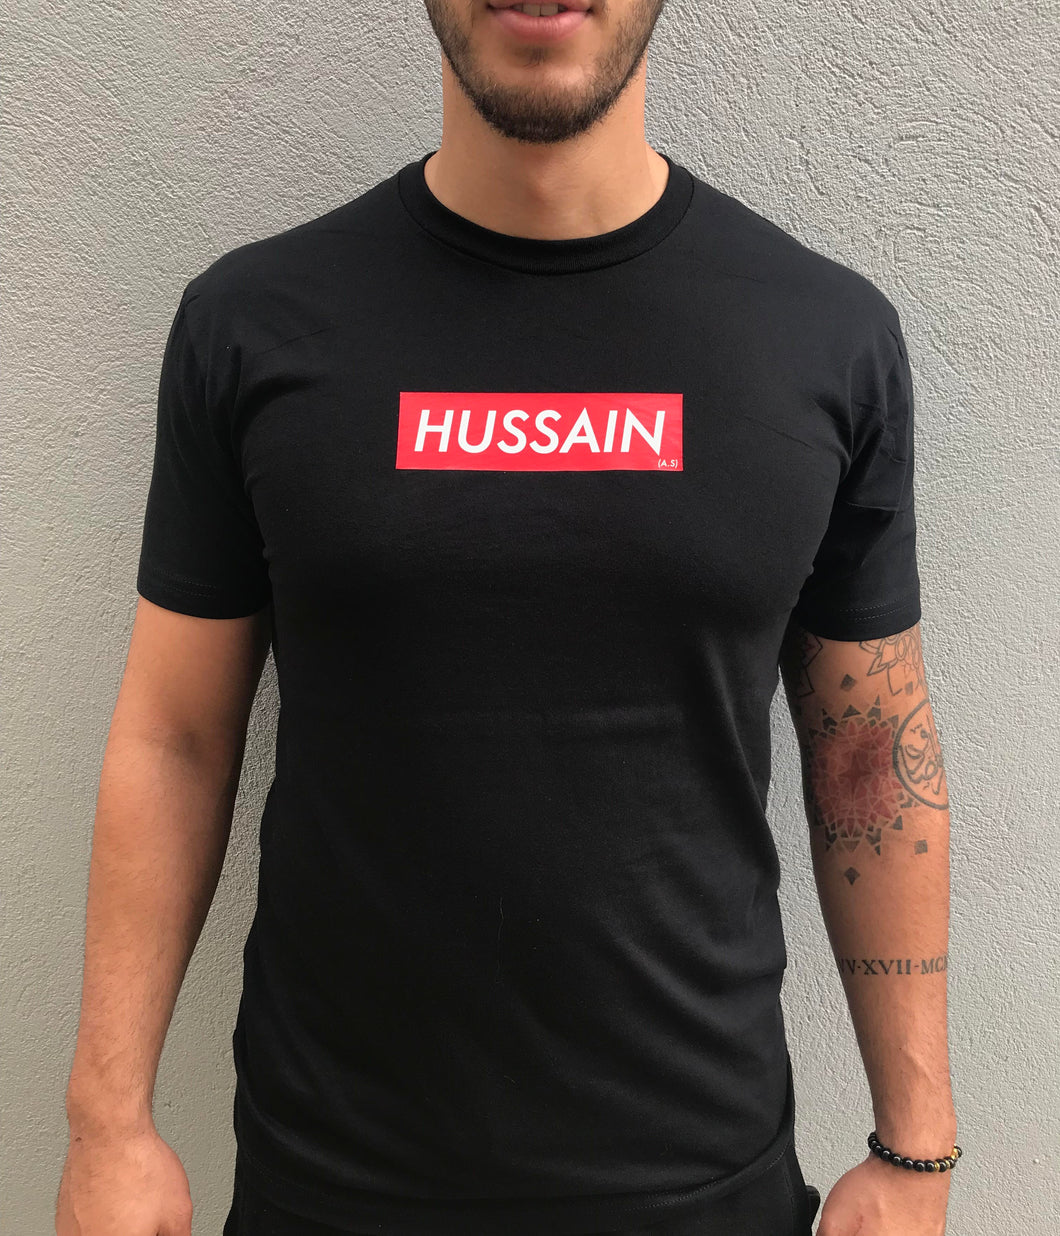 Hussain Supreme Tee